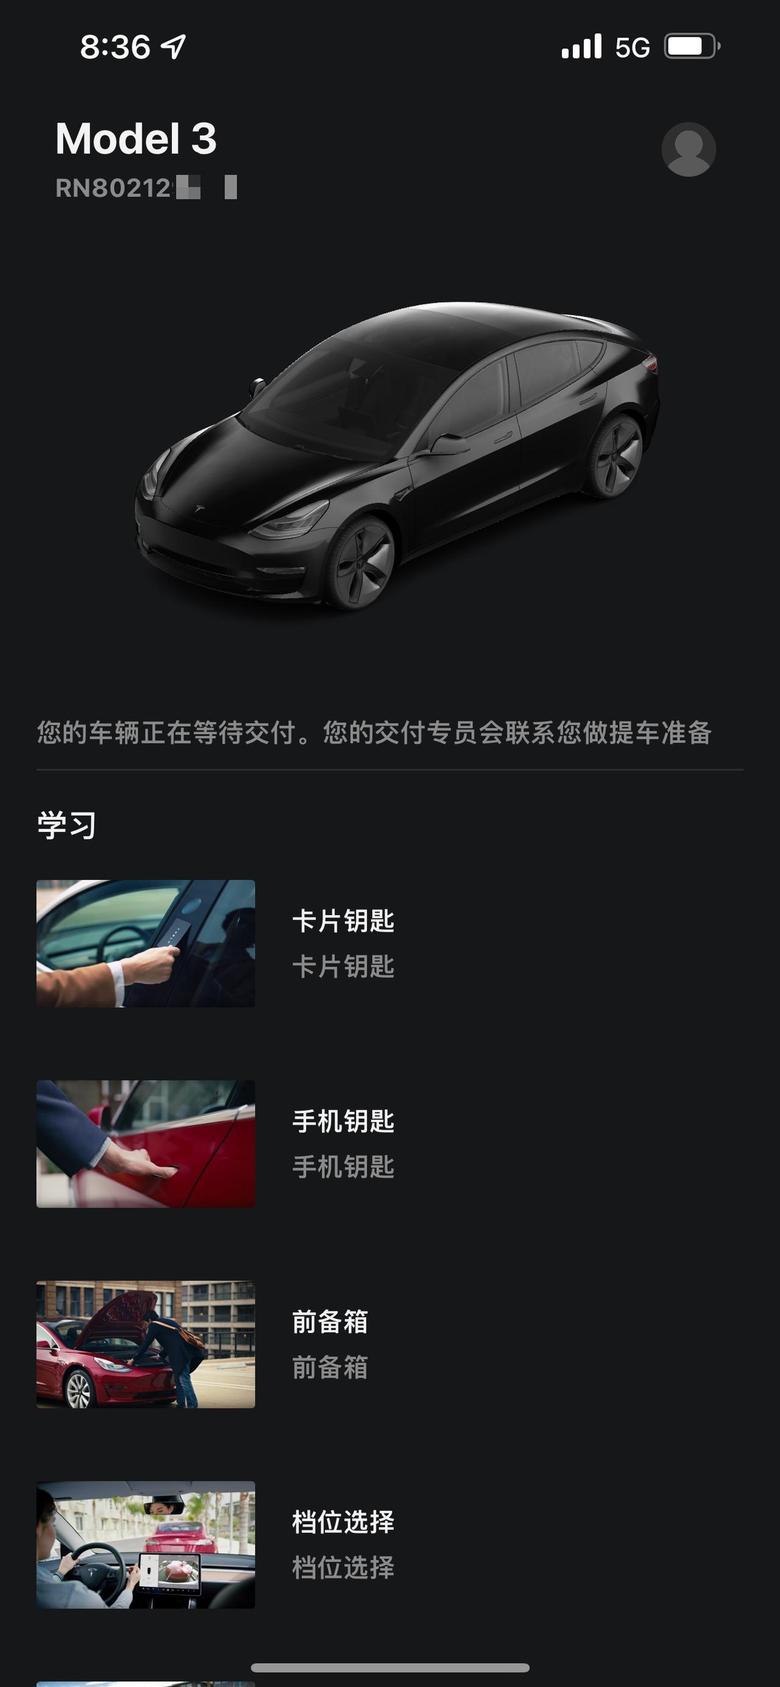 model 3 11月14上海订了标续的model3，提车预计6 10周估计要明年1月了吧..........静静等待ing（话说这个212我不知道大家口中的数字是不是这个位置的3个数）